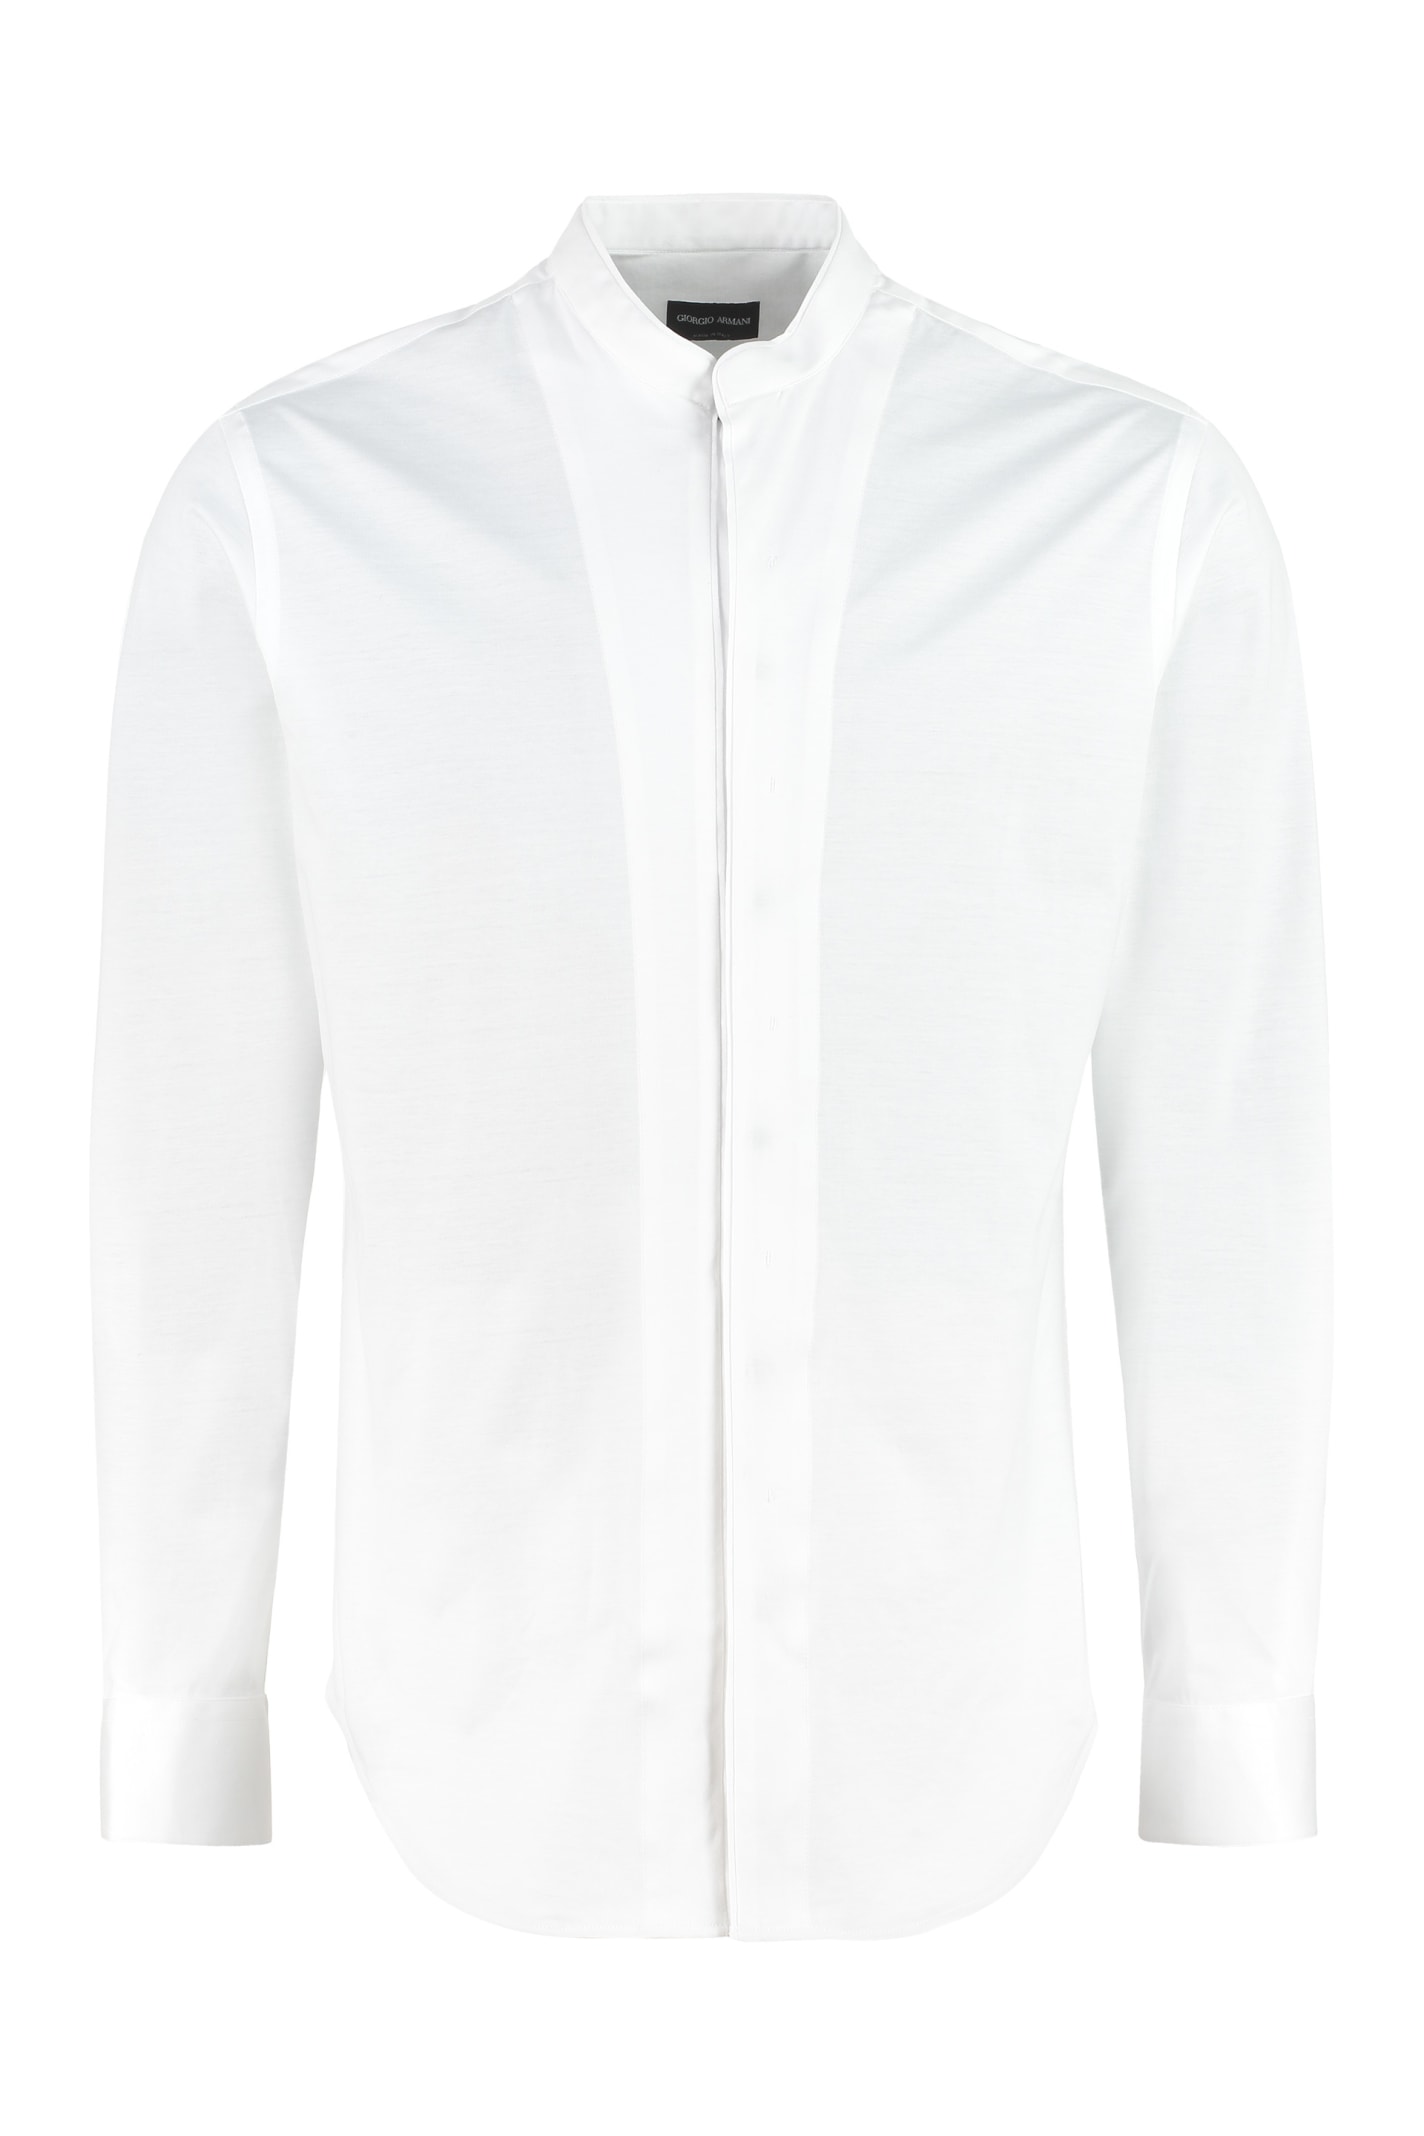 Giorgio Armani Stand-up Collar Shirt